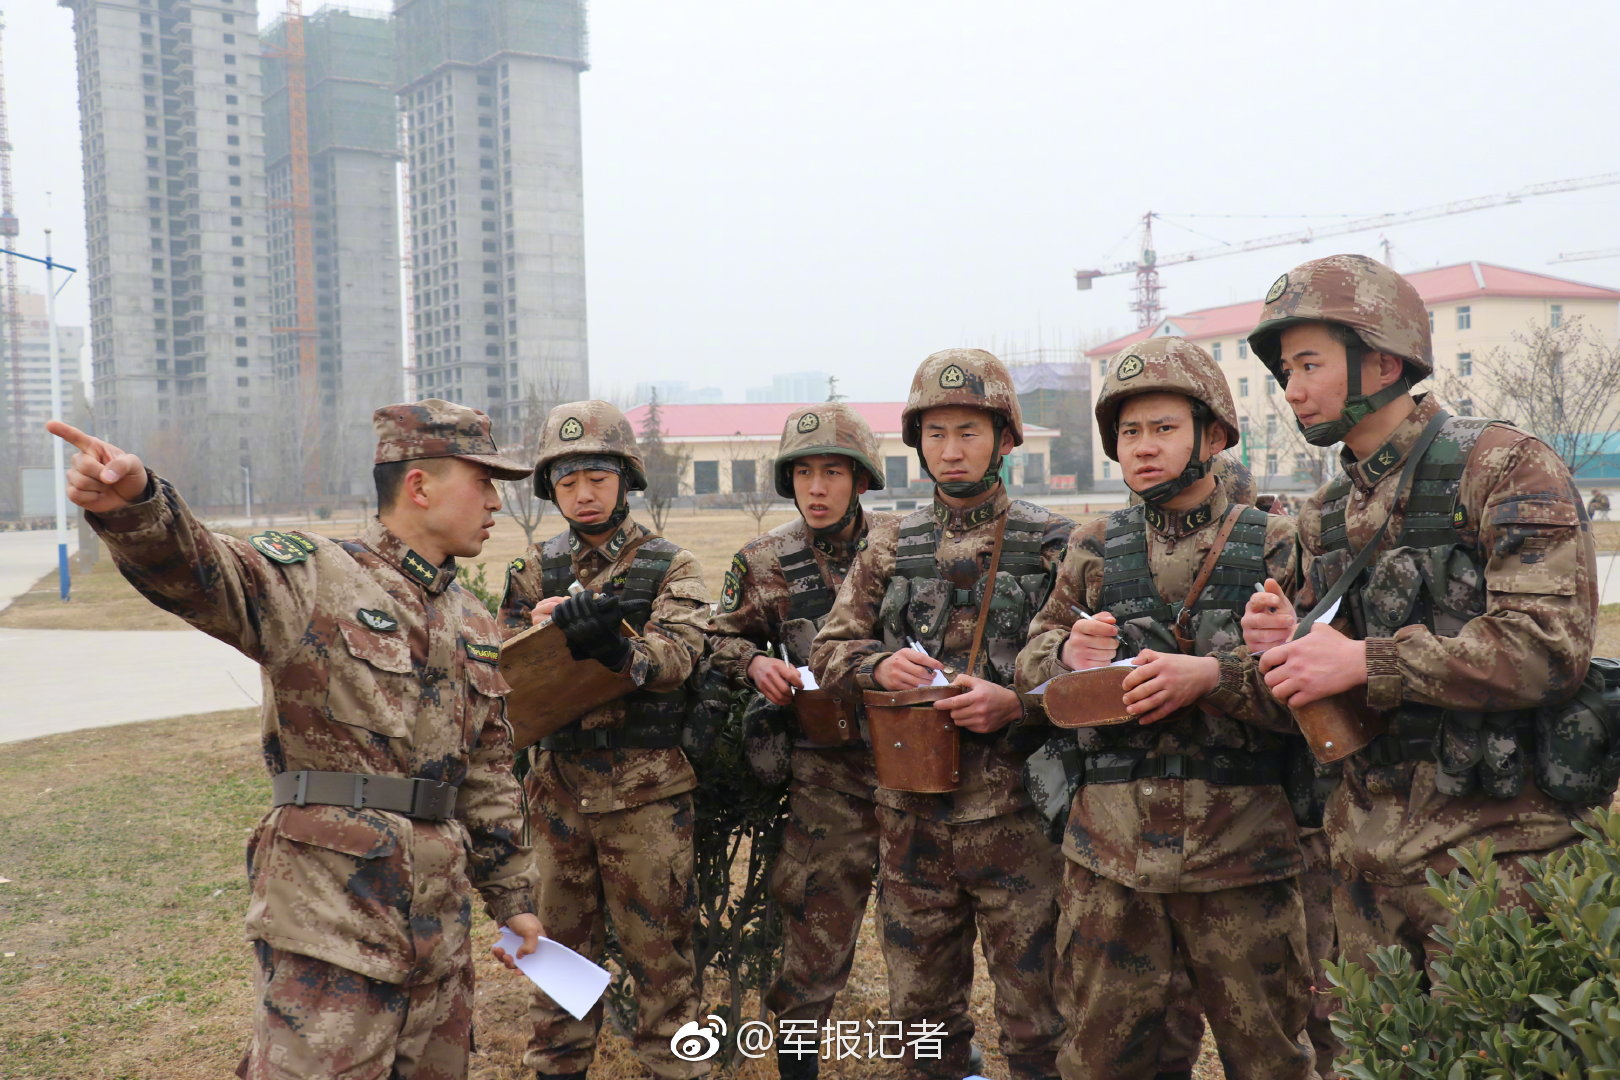 金正恩指导朝军队火力打击训练 亲自下达射击命令